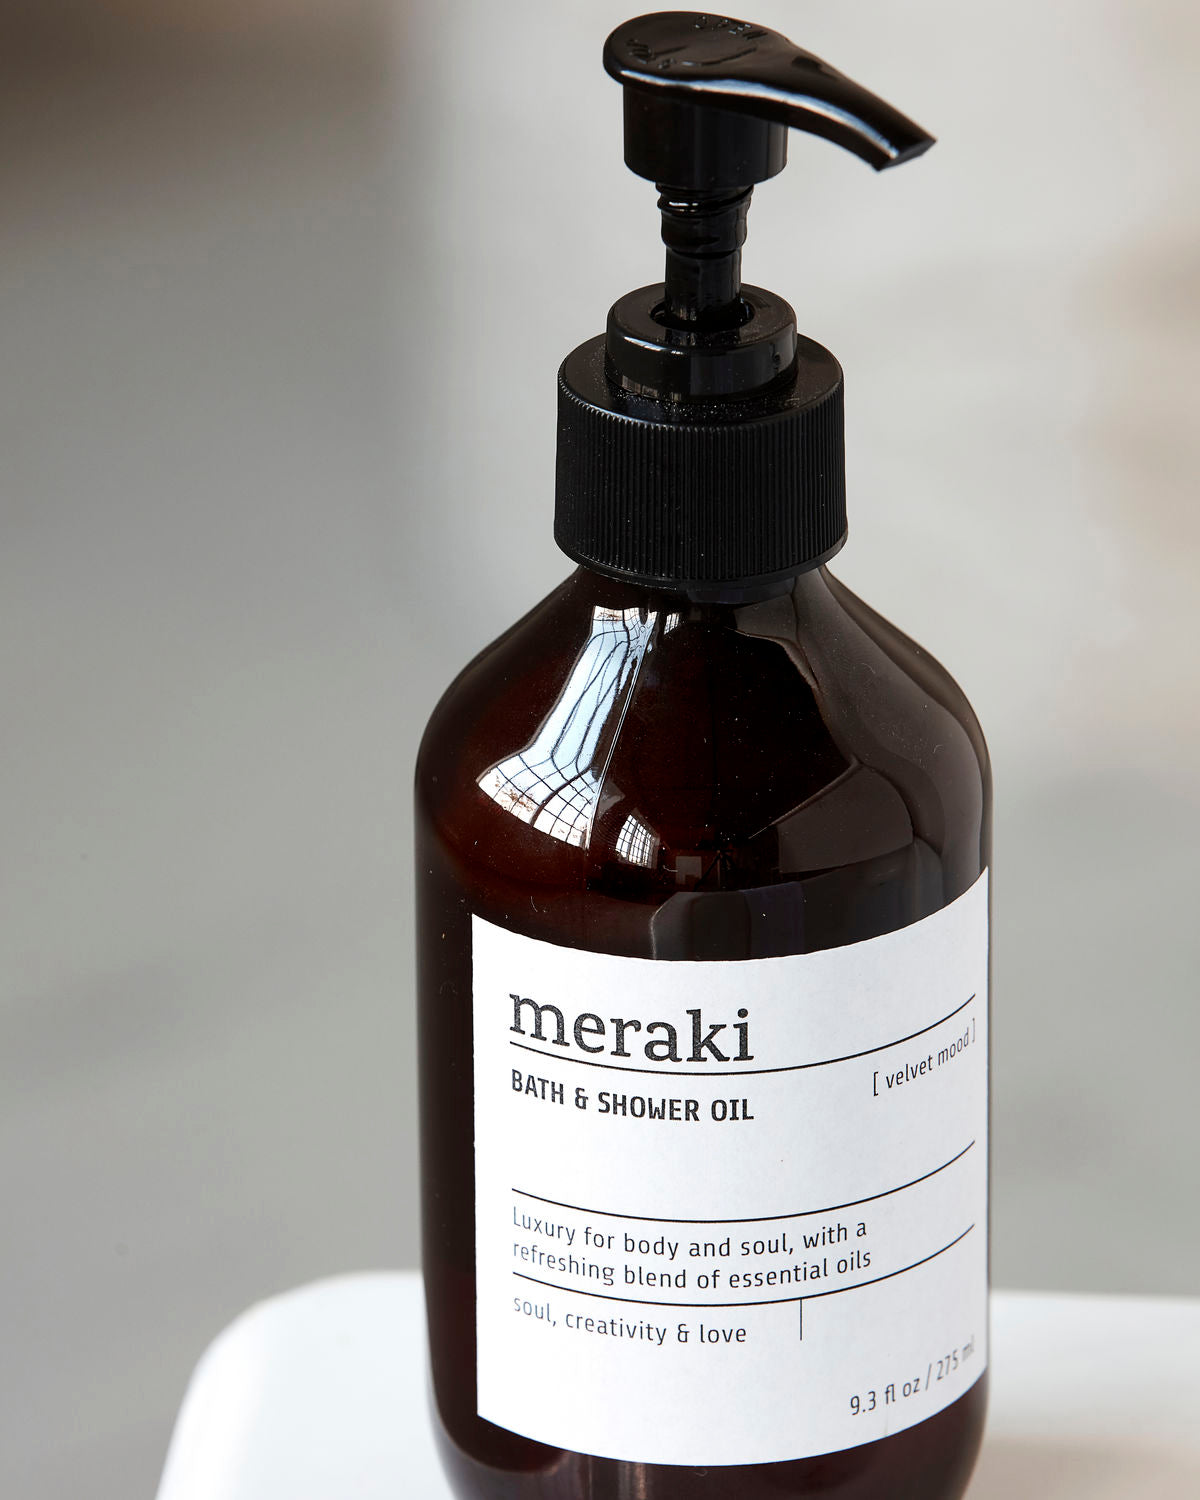 Meraki Bath & Shower oil - Velvet mood - 275ml